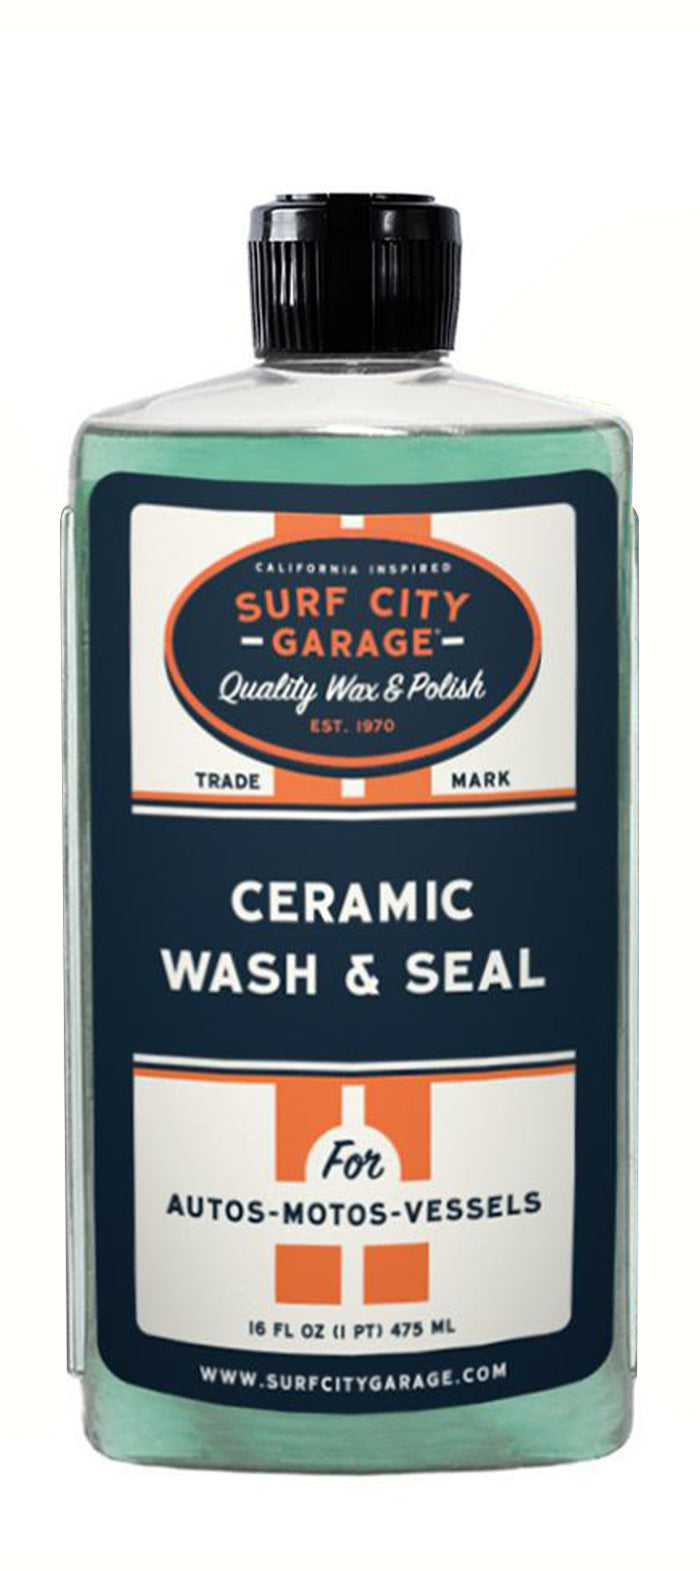 NEW LOOK! Ceramic Wash & Seal